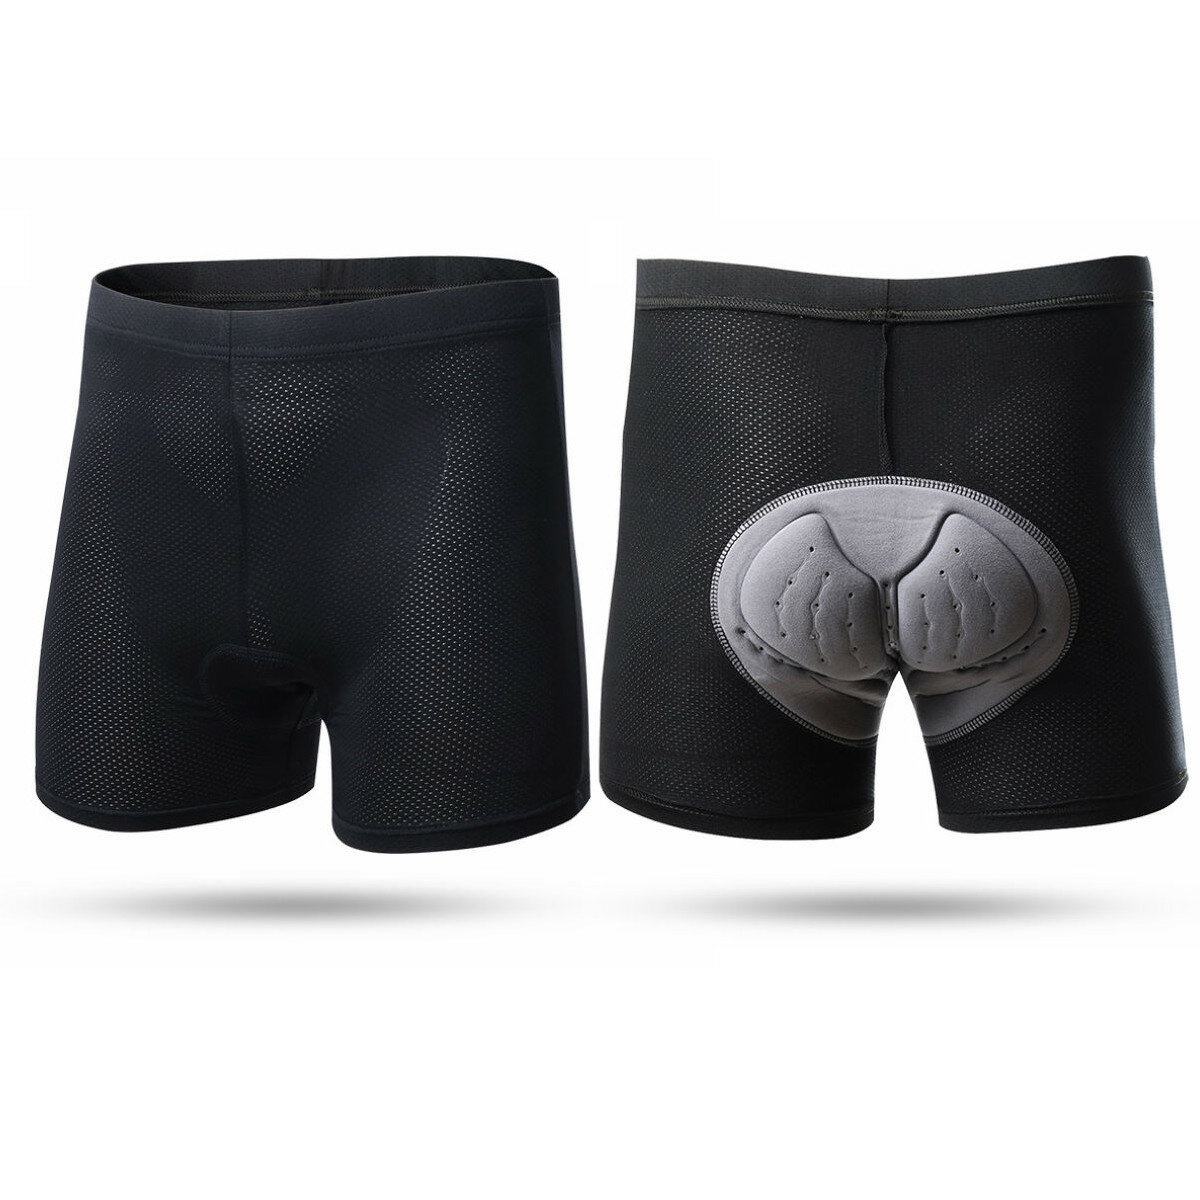 Équipe XINTOWN pour hommes, shorts de cyclisme respirants et confortables avec rembourrage Coolmax 3D, sous-vêtements de cyclisme.